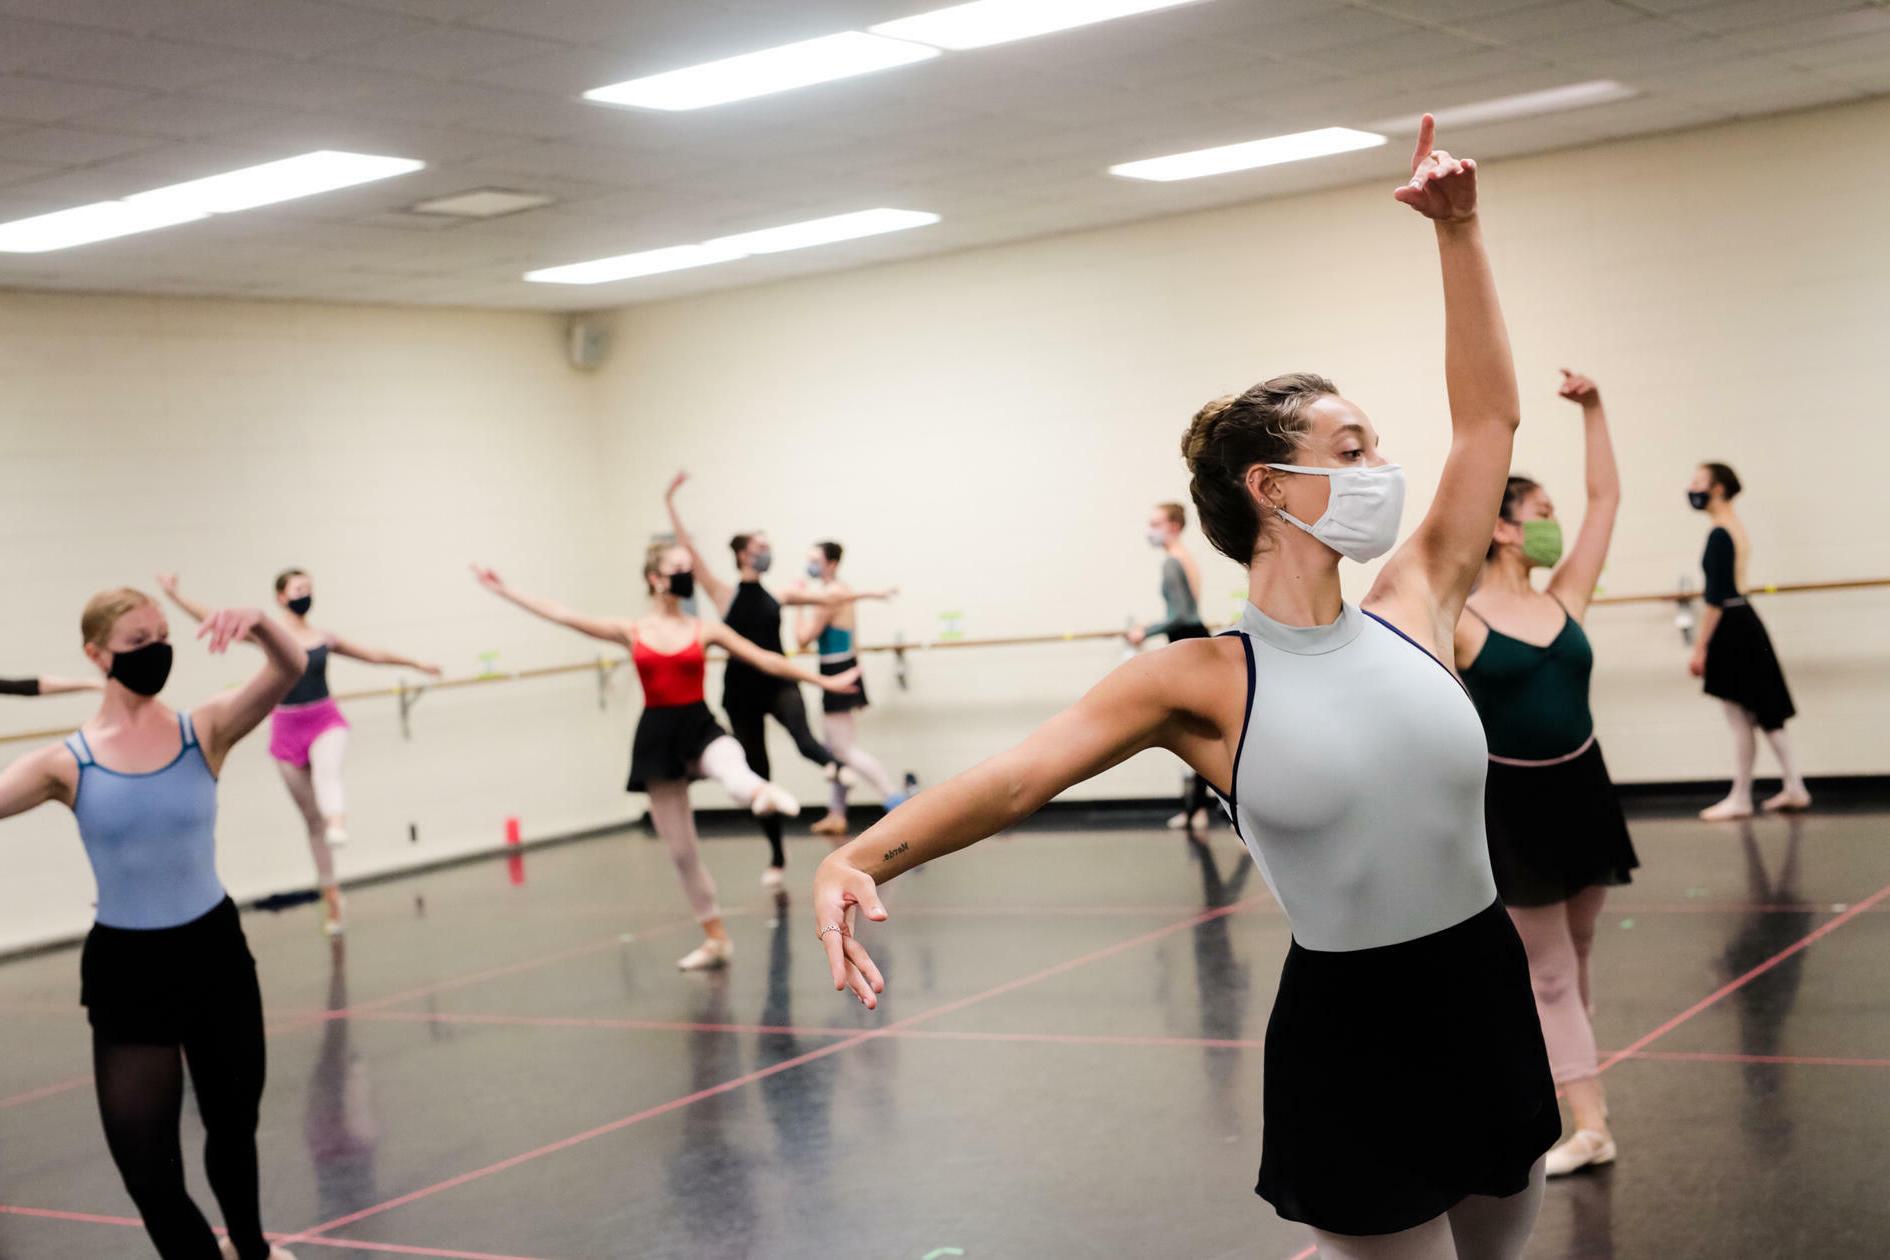 Dancers in a practice room